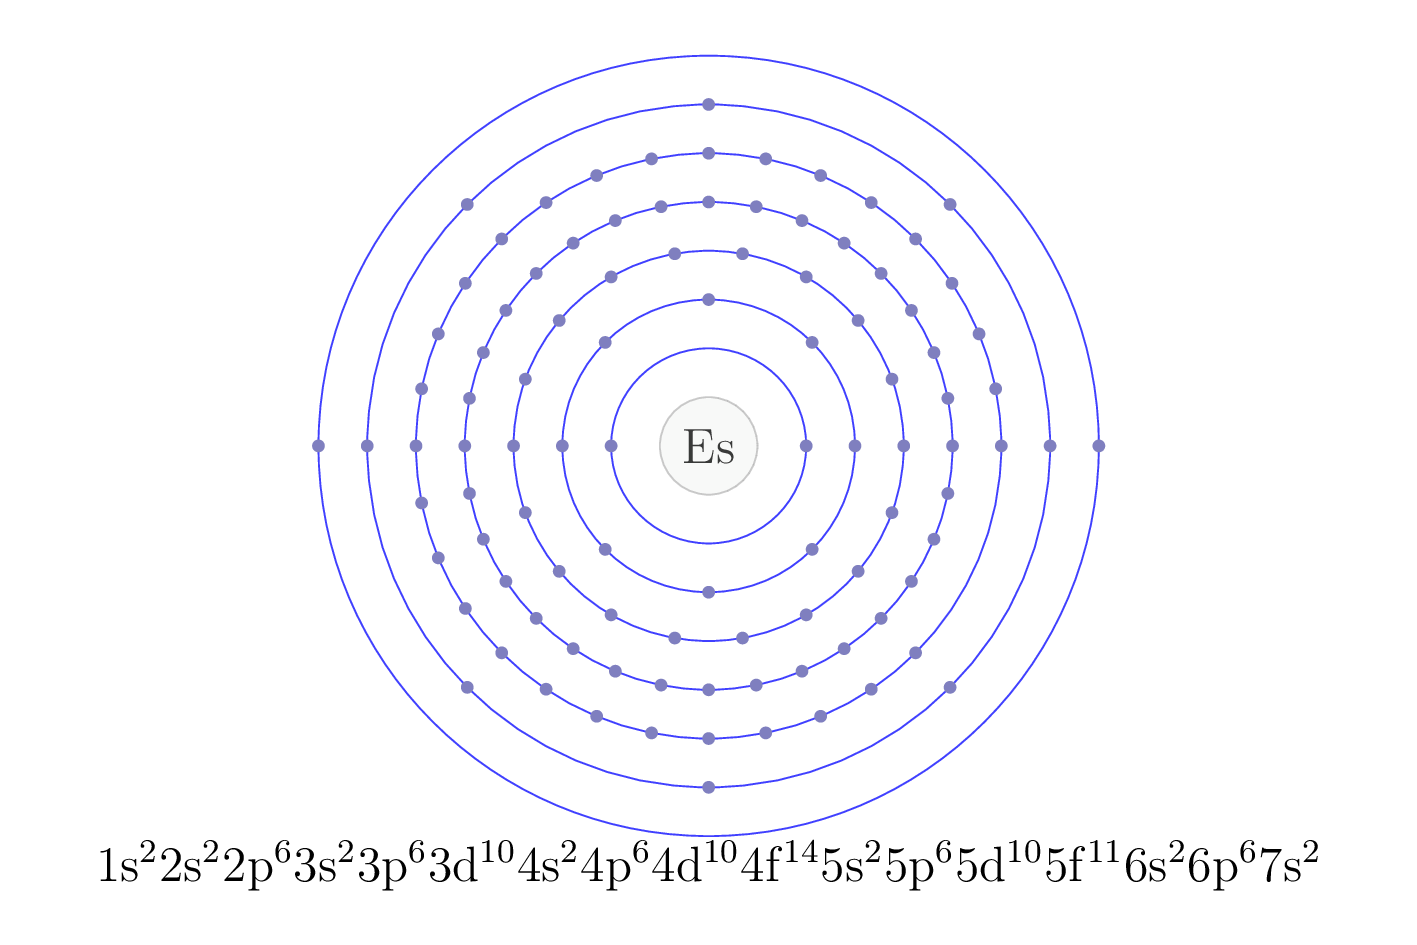 electron configuration of element Es